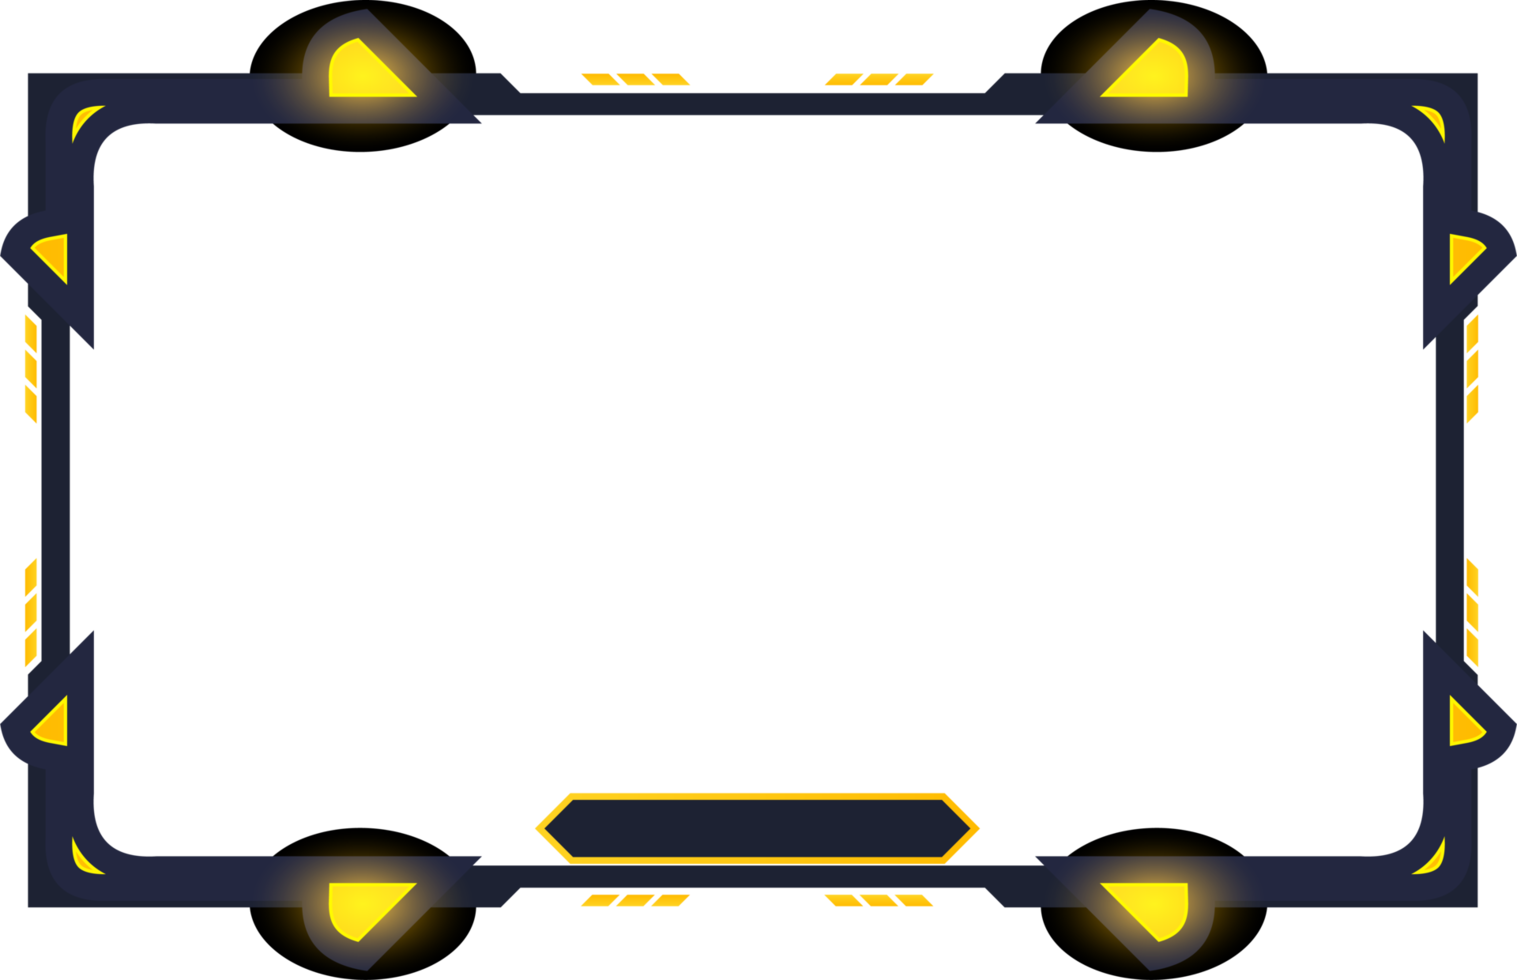 image de superposition de diffusion en direct pour les joueurs avec des écrans sombres. conception de superposition de flux futuriste avec boutons numériques. superposition d'écran de jeu png avec des formes abstraites et une couleur jaune.